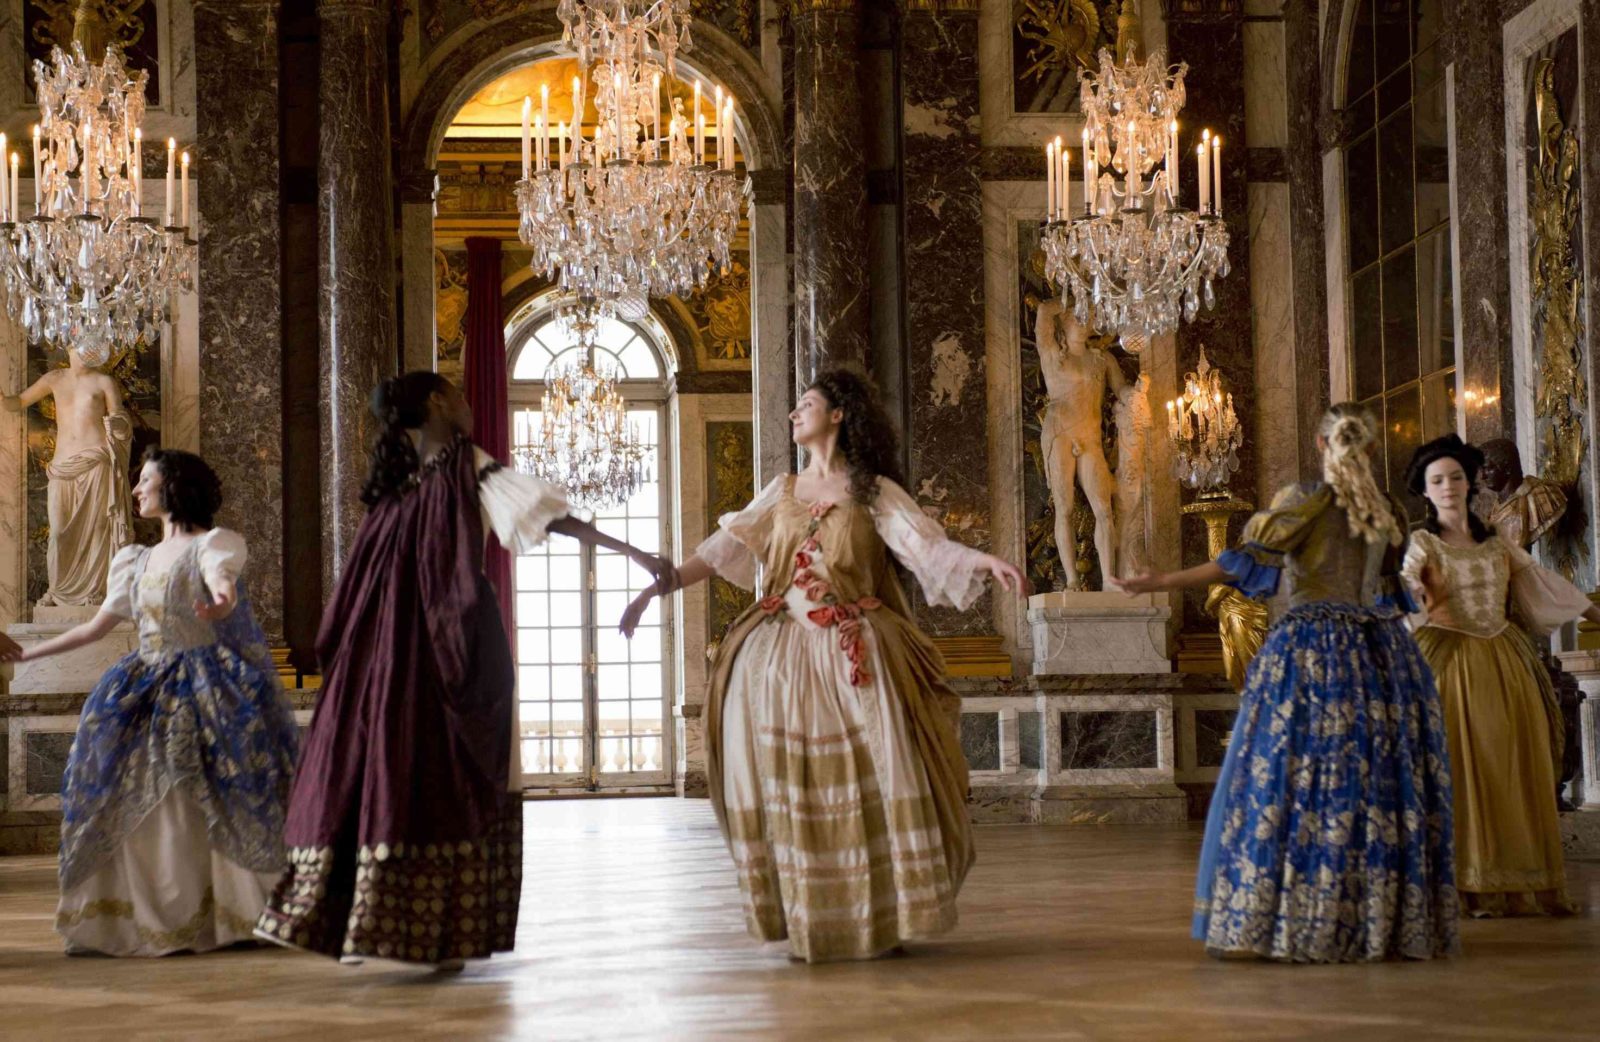 Розваги, які тут проводяться, дозволять зануритися в строкате минуле Франції, побувати на справжньому балу при дворі, де під класичну музику галантні дами і кавалери в пишних костюмах рухаються в танці точно так же, як і кілька століть тому